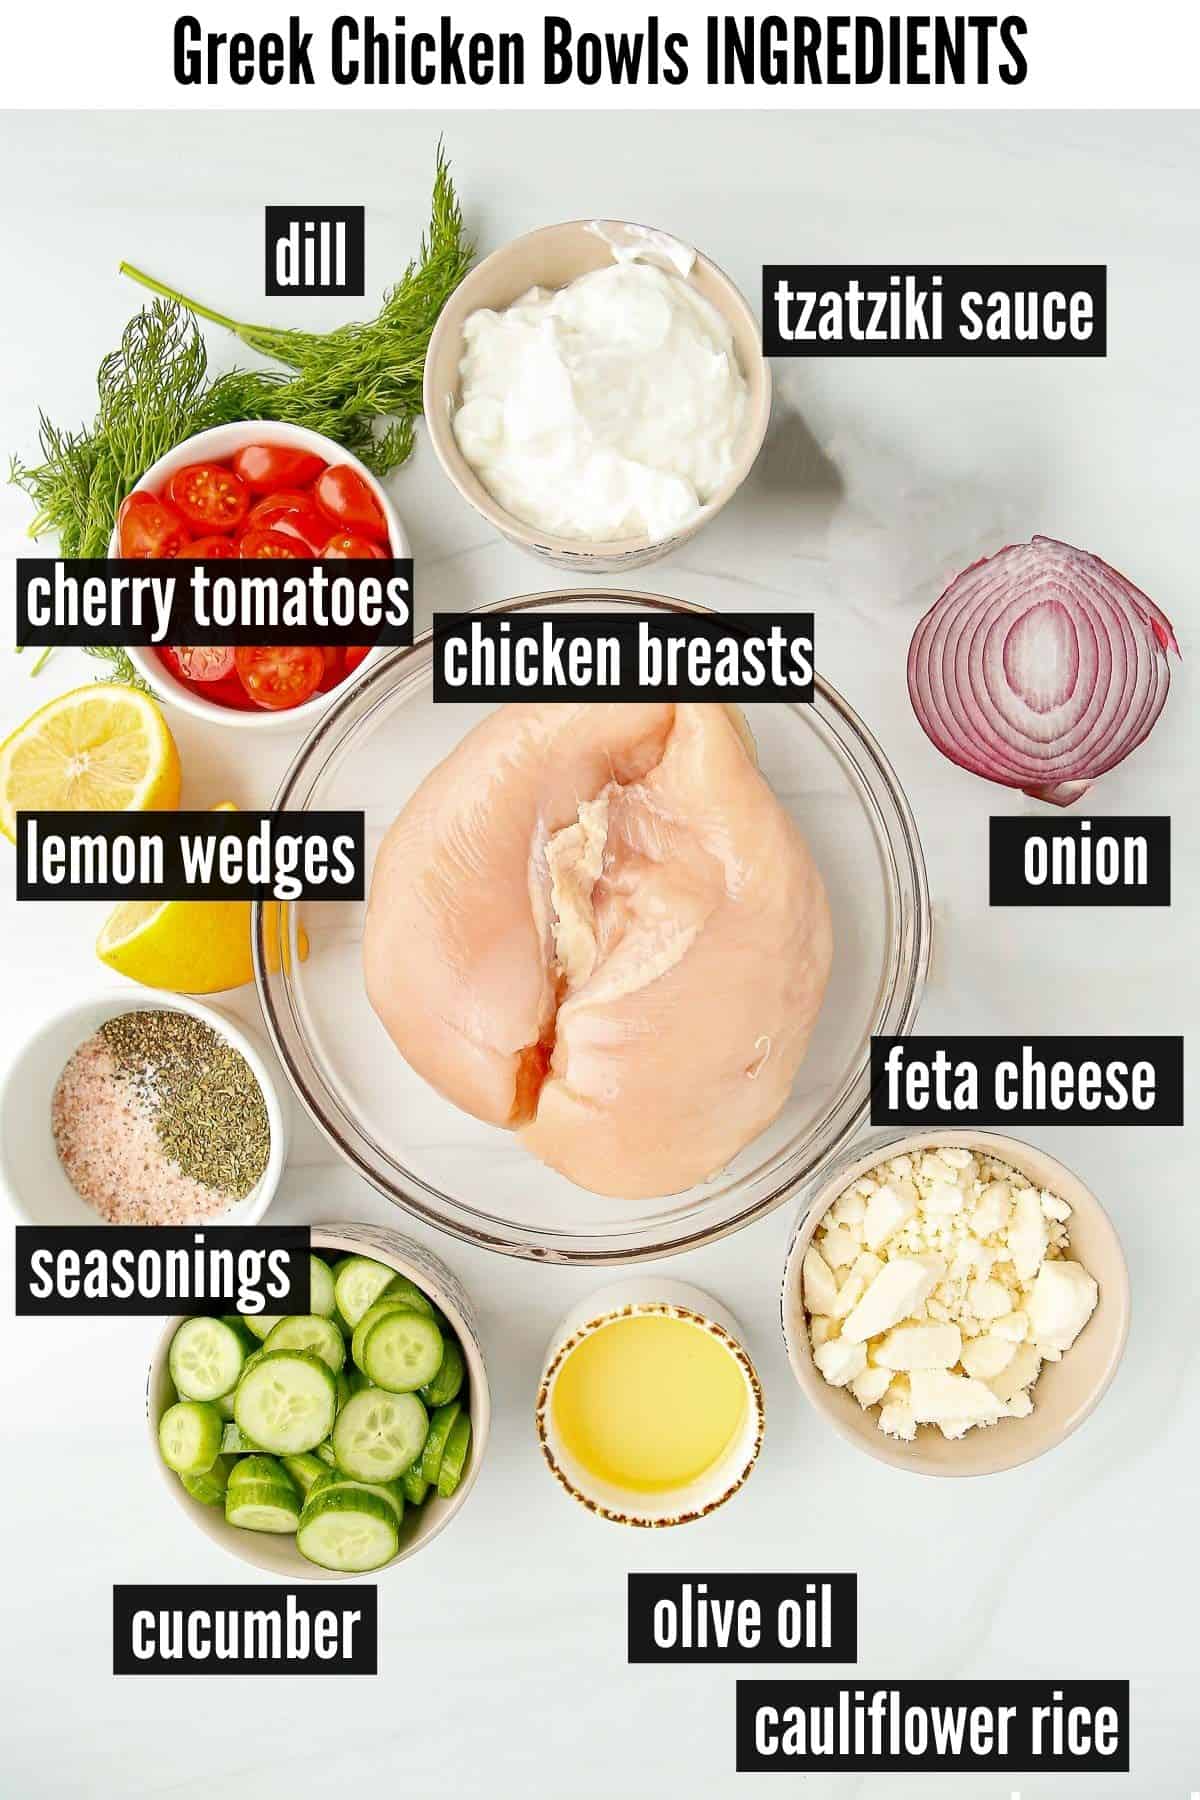 greek chicken bowls labelled ingredients